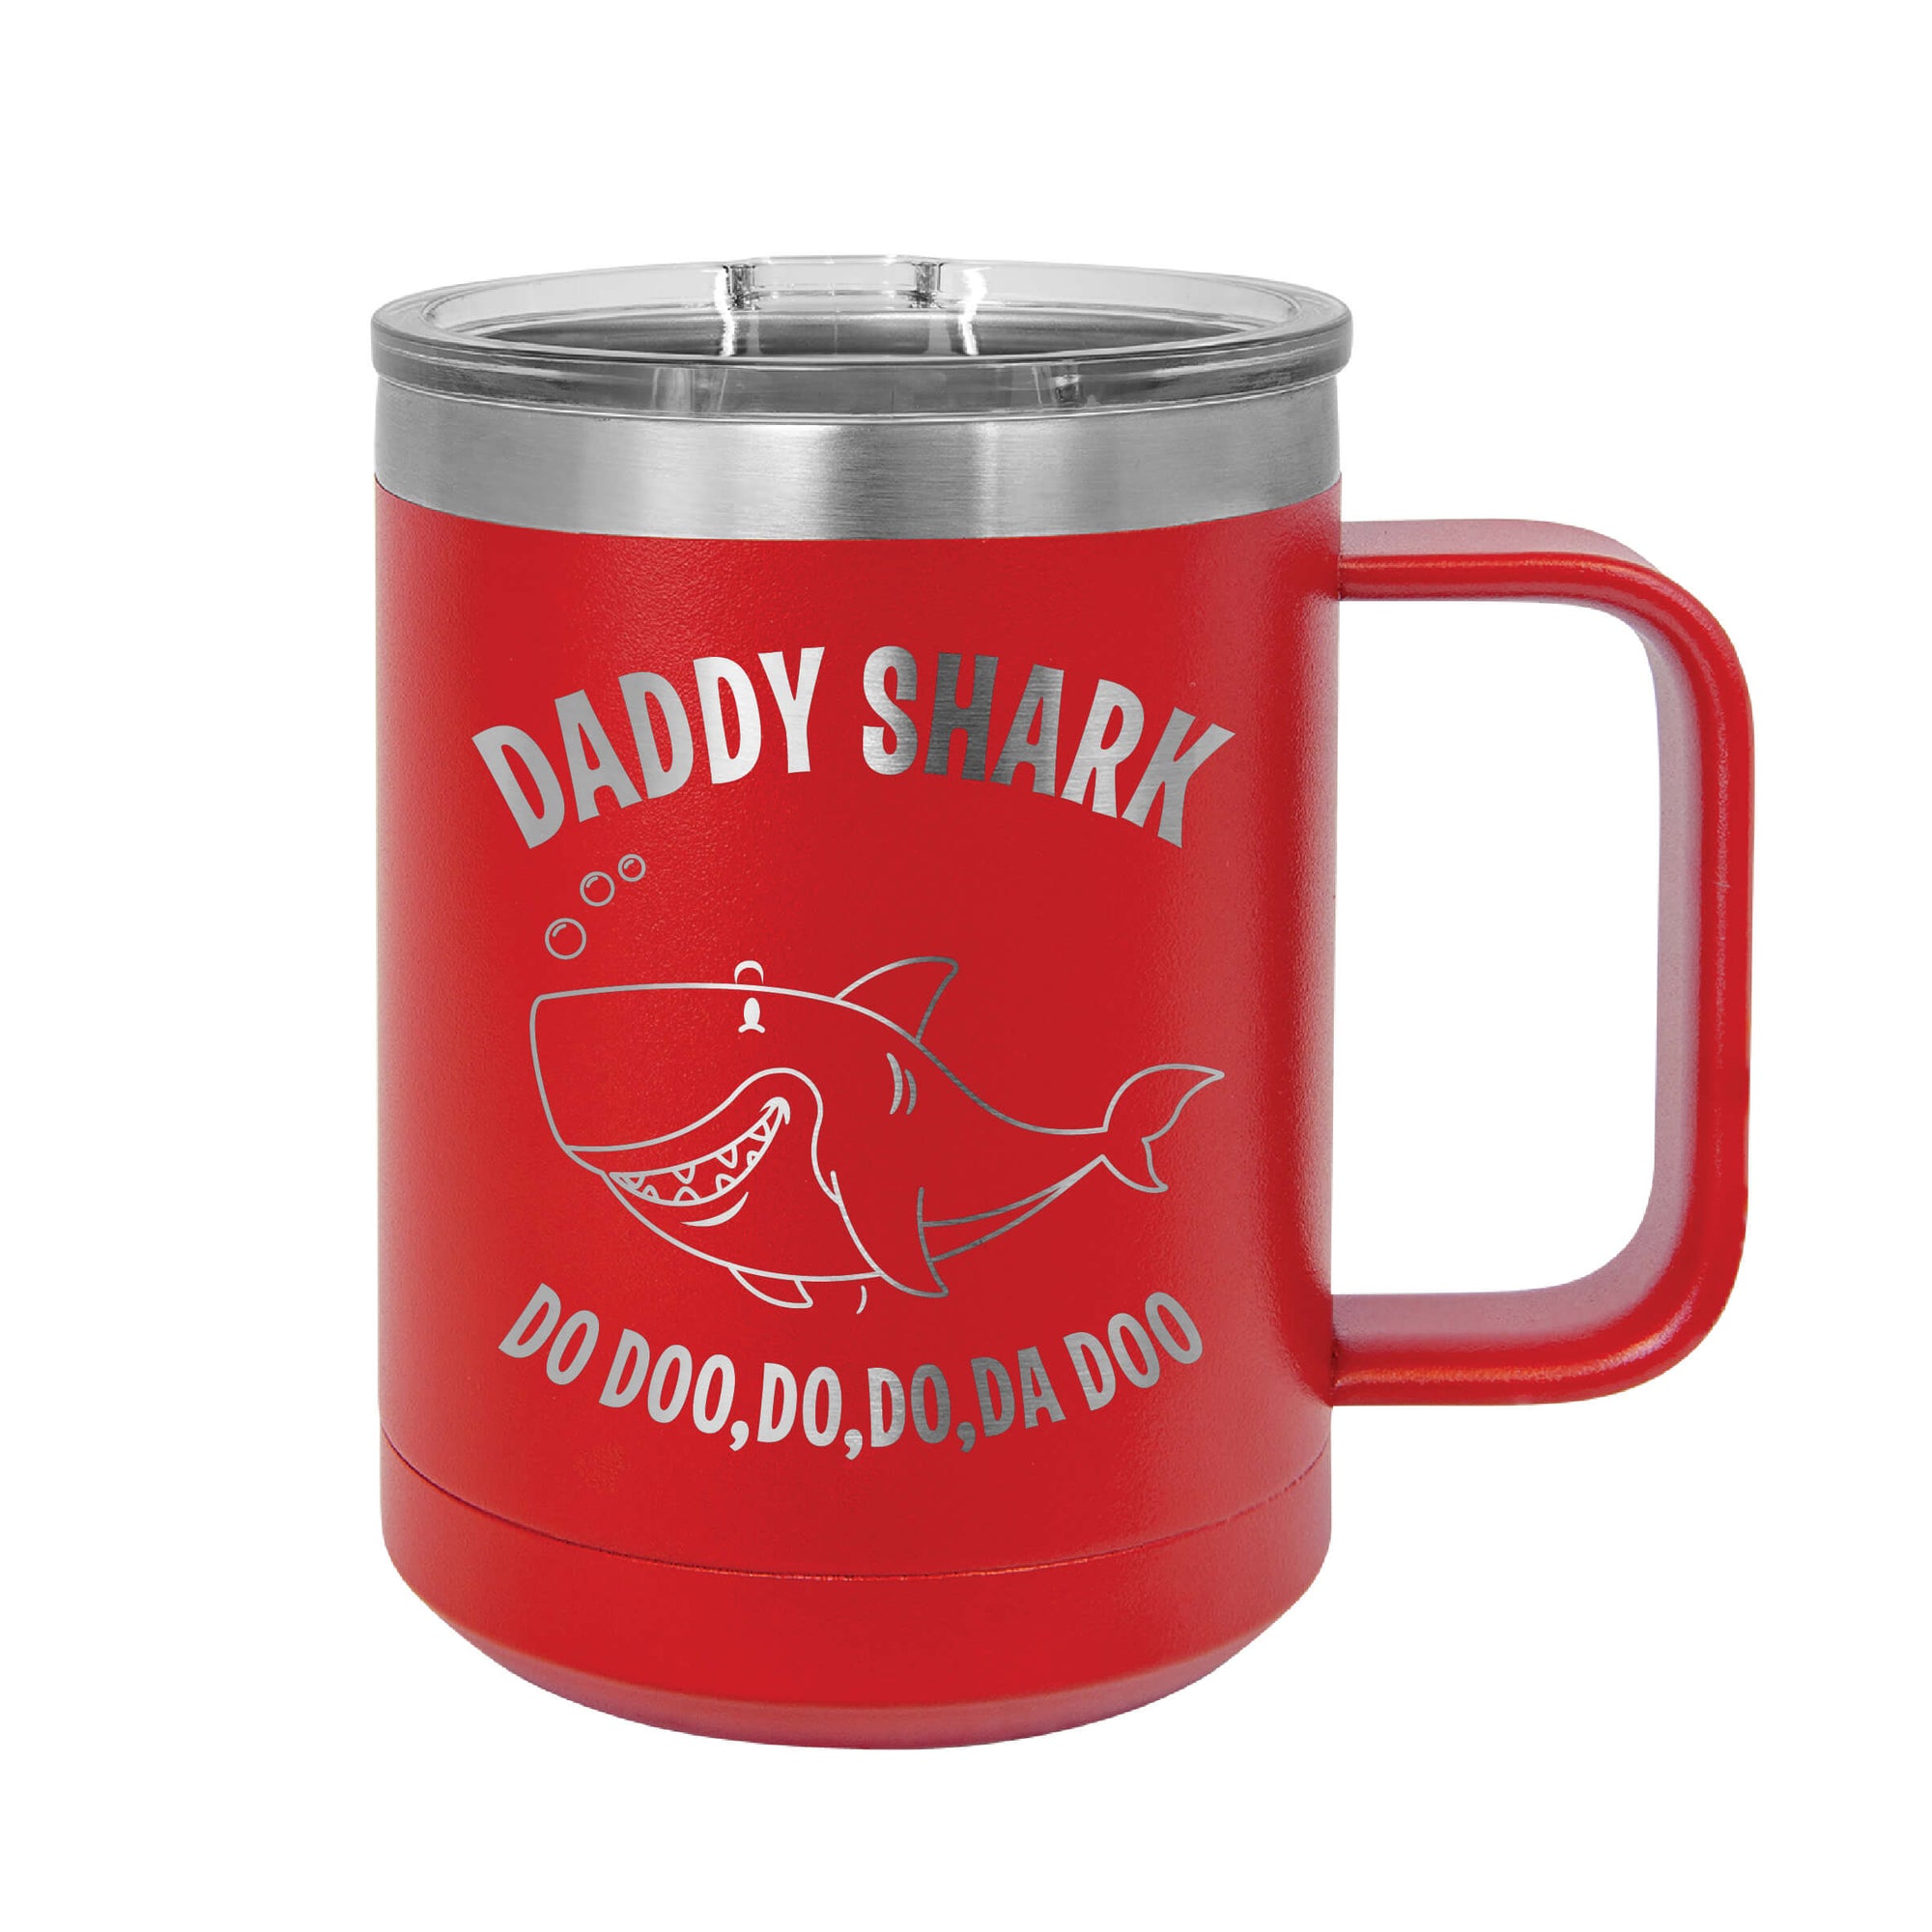 Daddy Shark Mug Tumbler